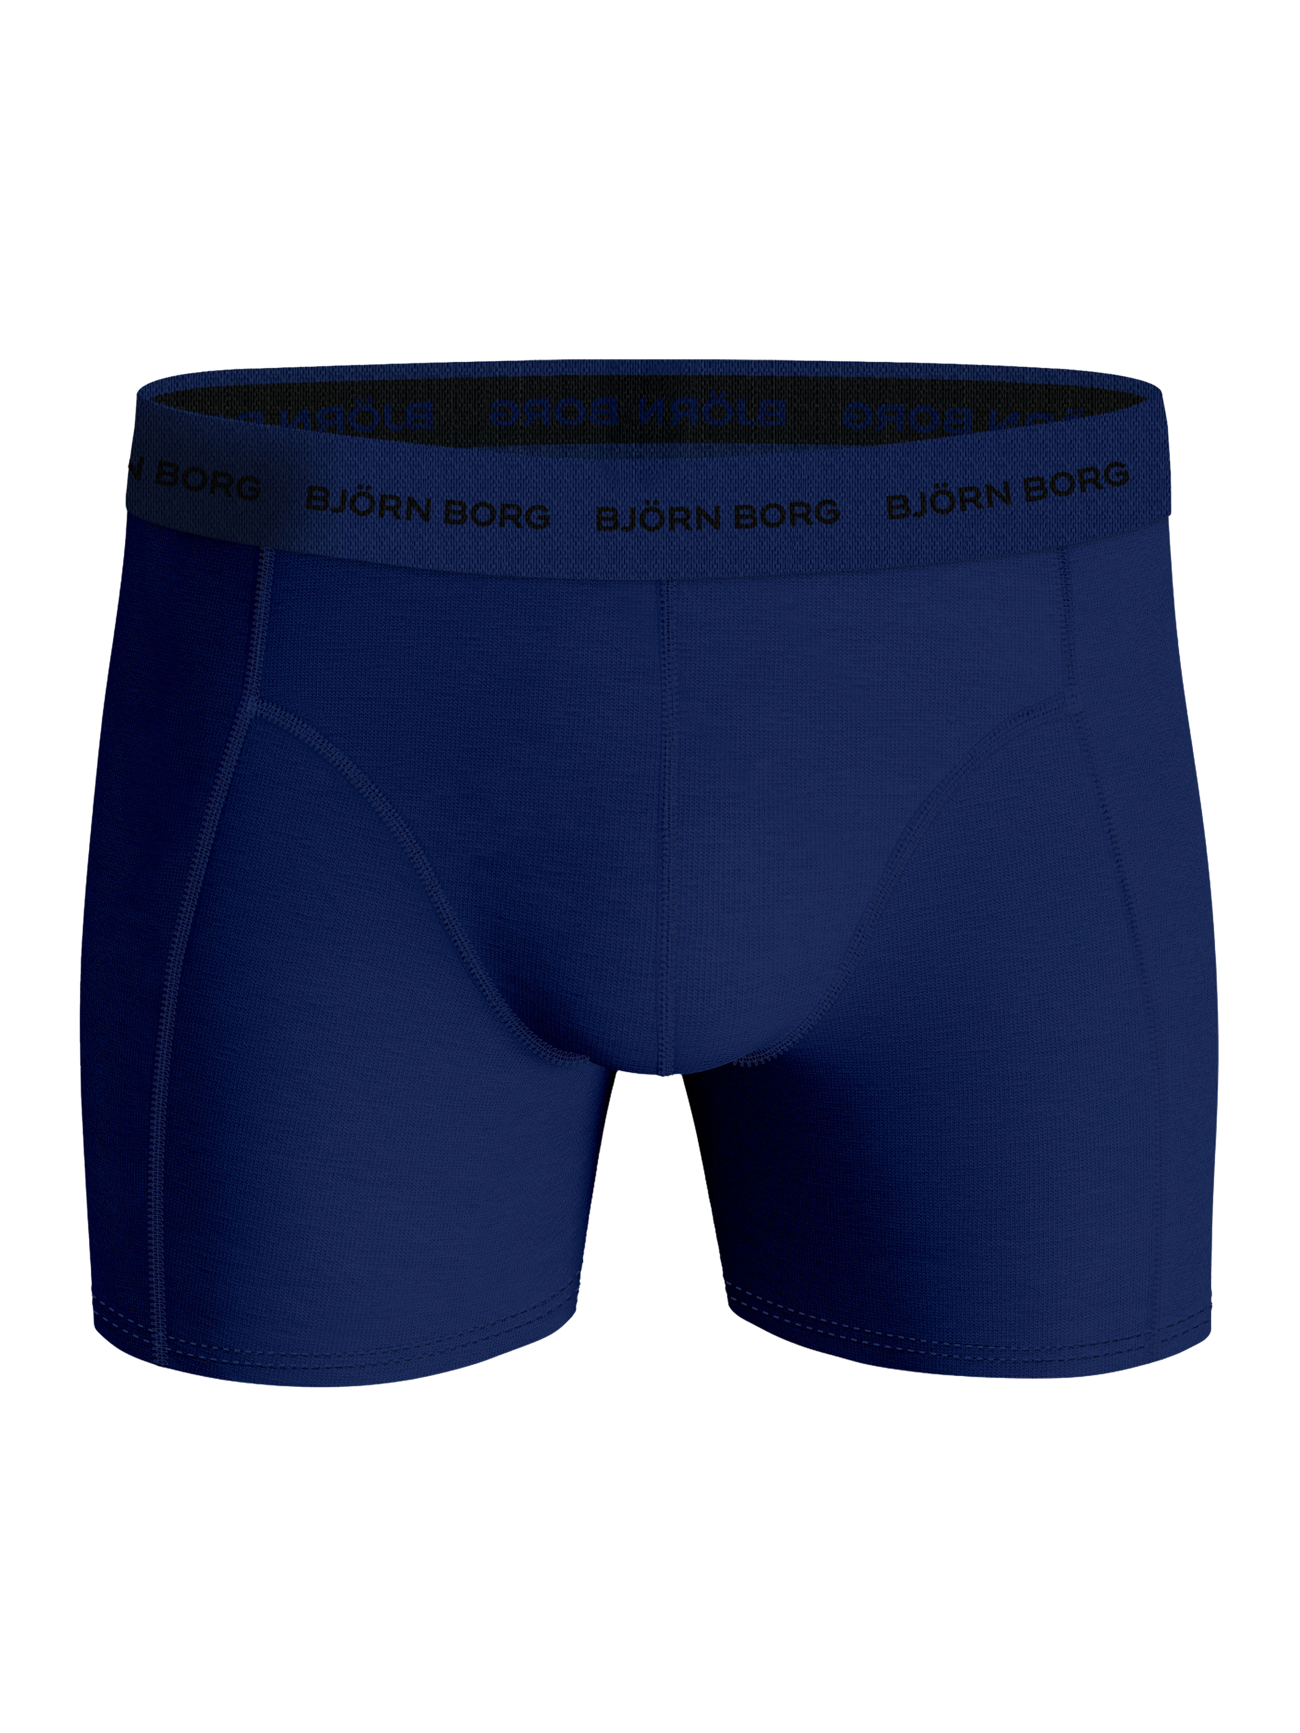 Bjorn Borg Men's Essential 5 Boxer Briefs - Black/Blue/White - S :  : Clothing, Shoes & Accessories